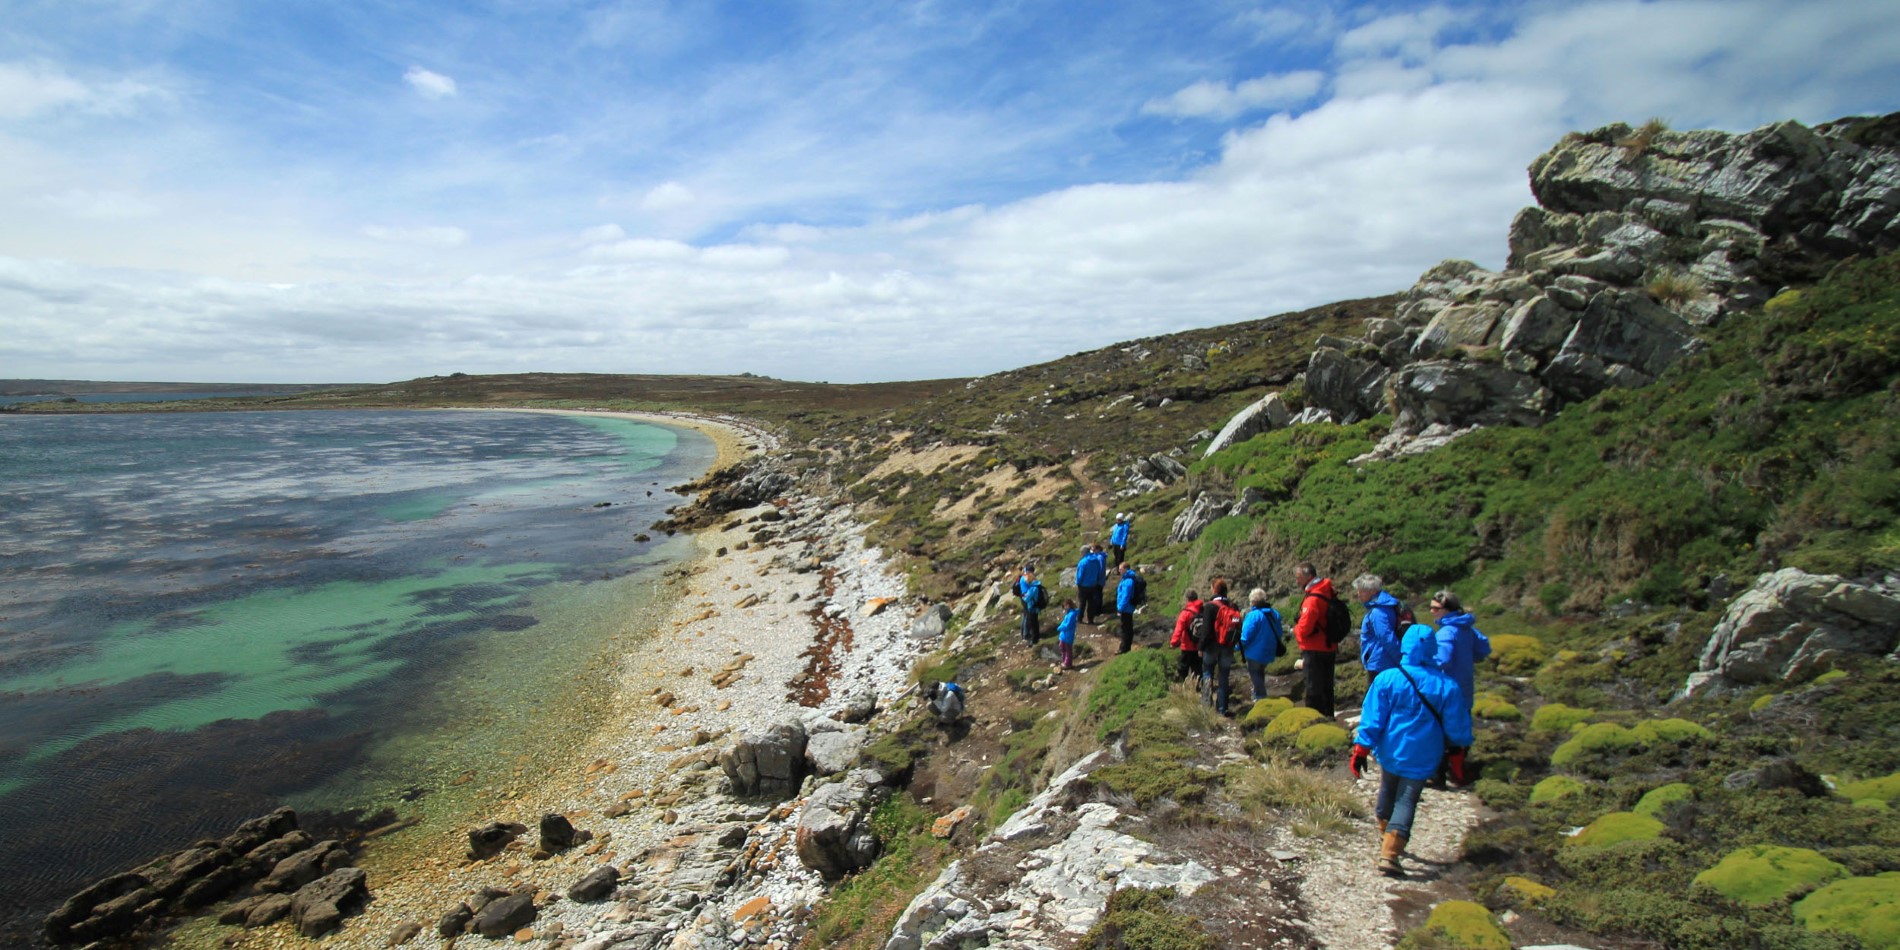 A walk through scenic Falklands